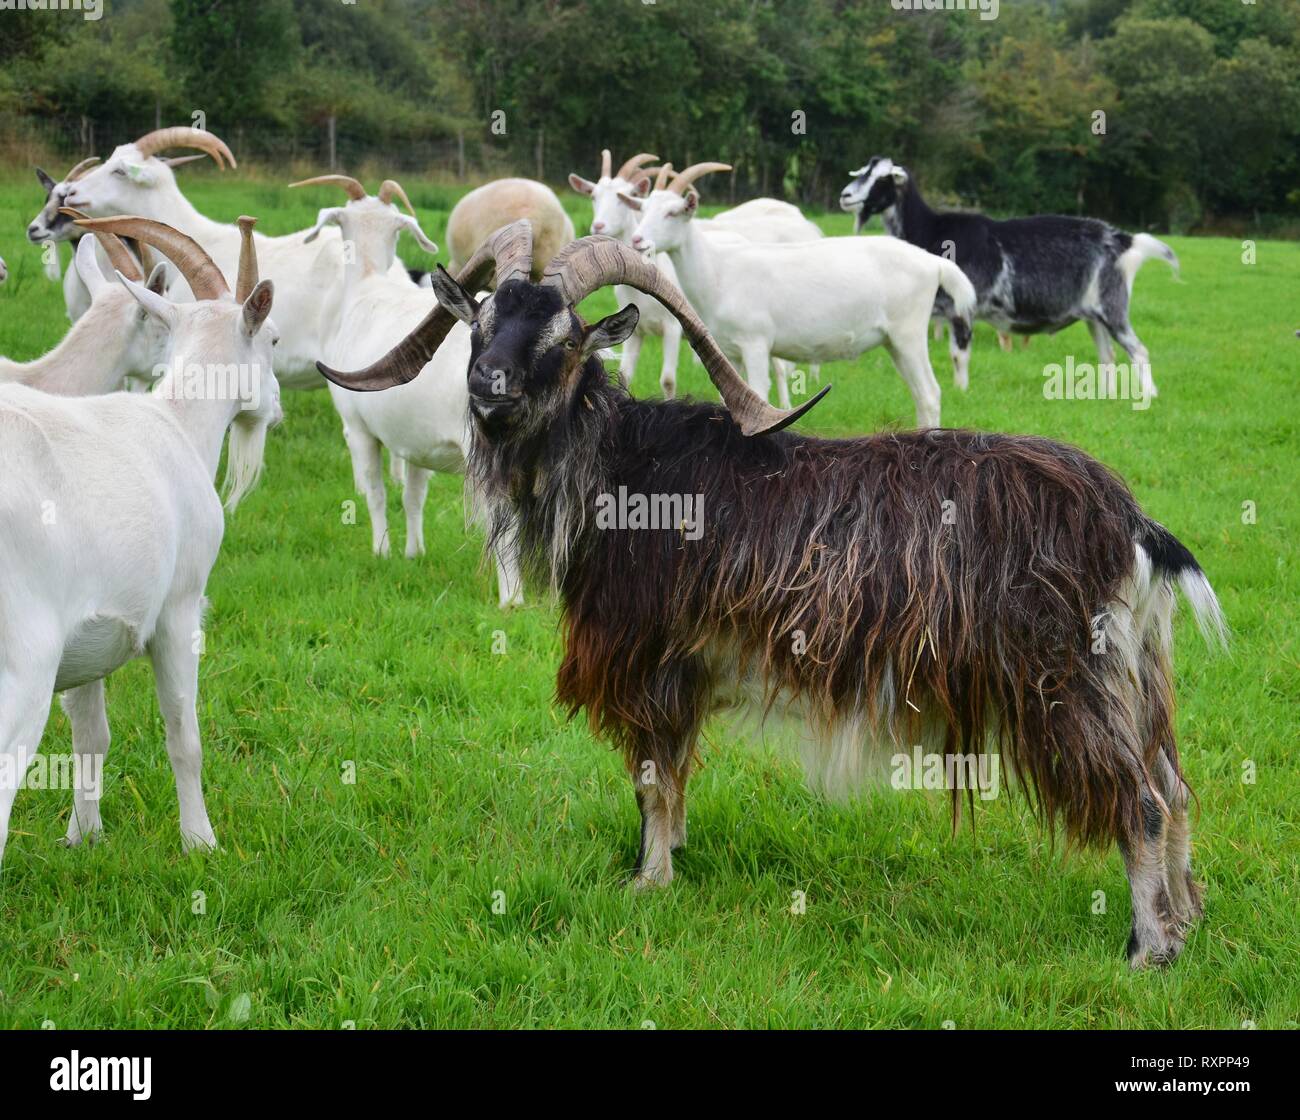 Eine beeindruckende Ziegenbock mit Hörnern, stehend auf einer Wiese mit anderen Ziegen. Irland. Stockfoto